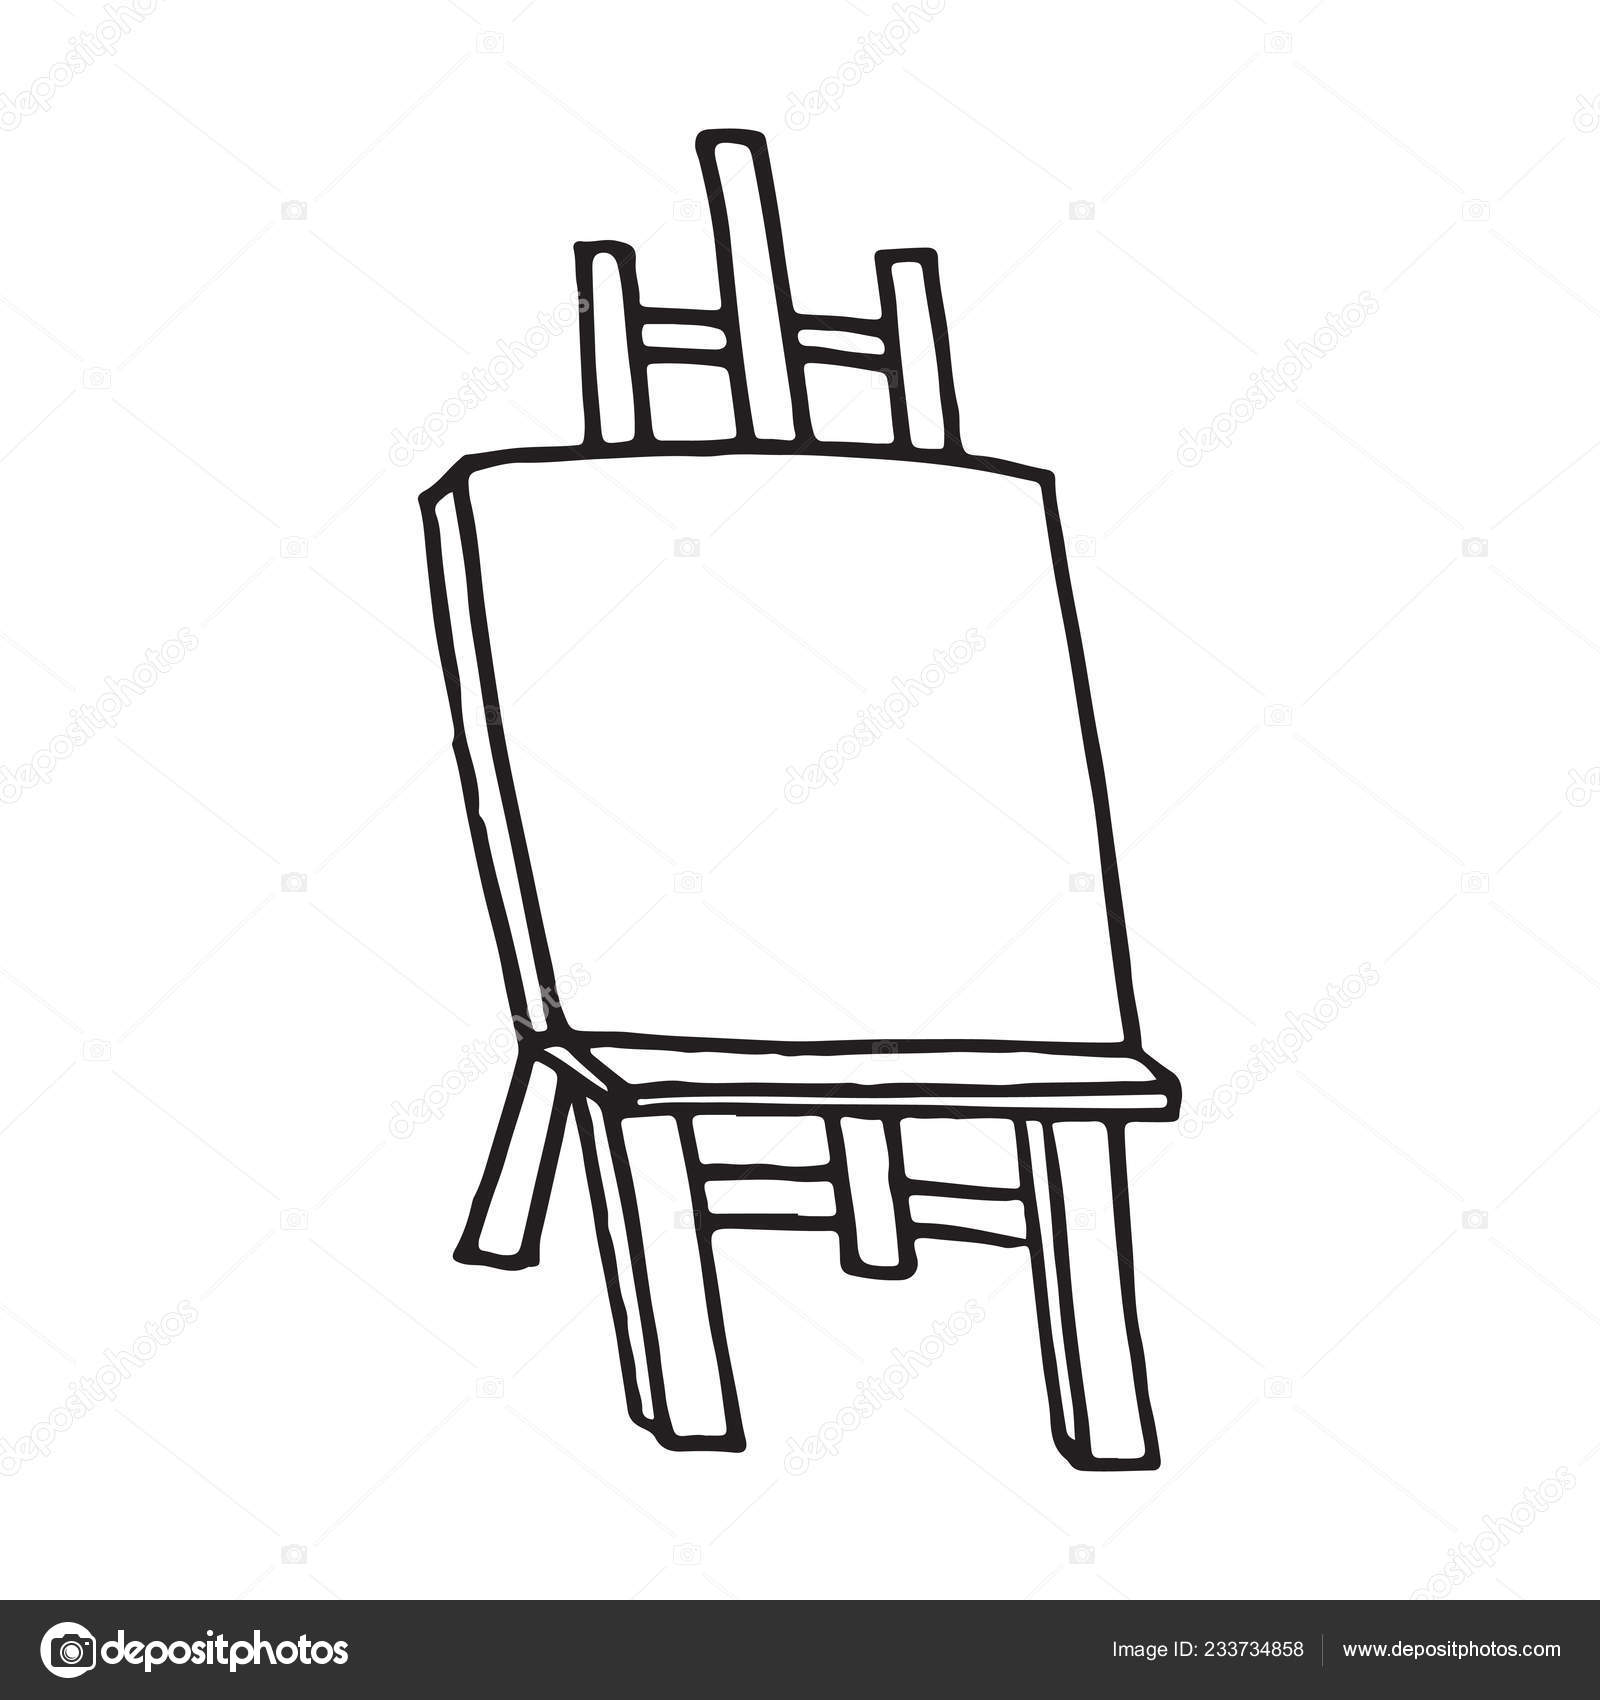 https://st4.depositphotos.com/17569458/23373/v/1600/depositphotos_233734858-stock-illustration-easel-cartoon-vector-illustration-hand.jpg